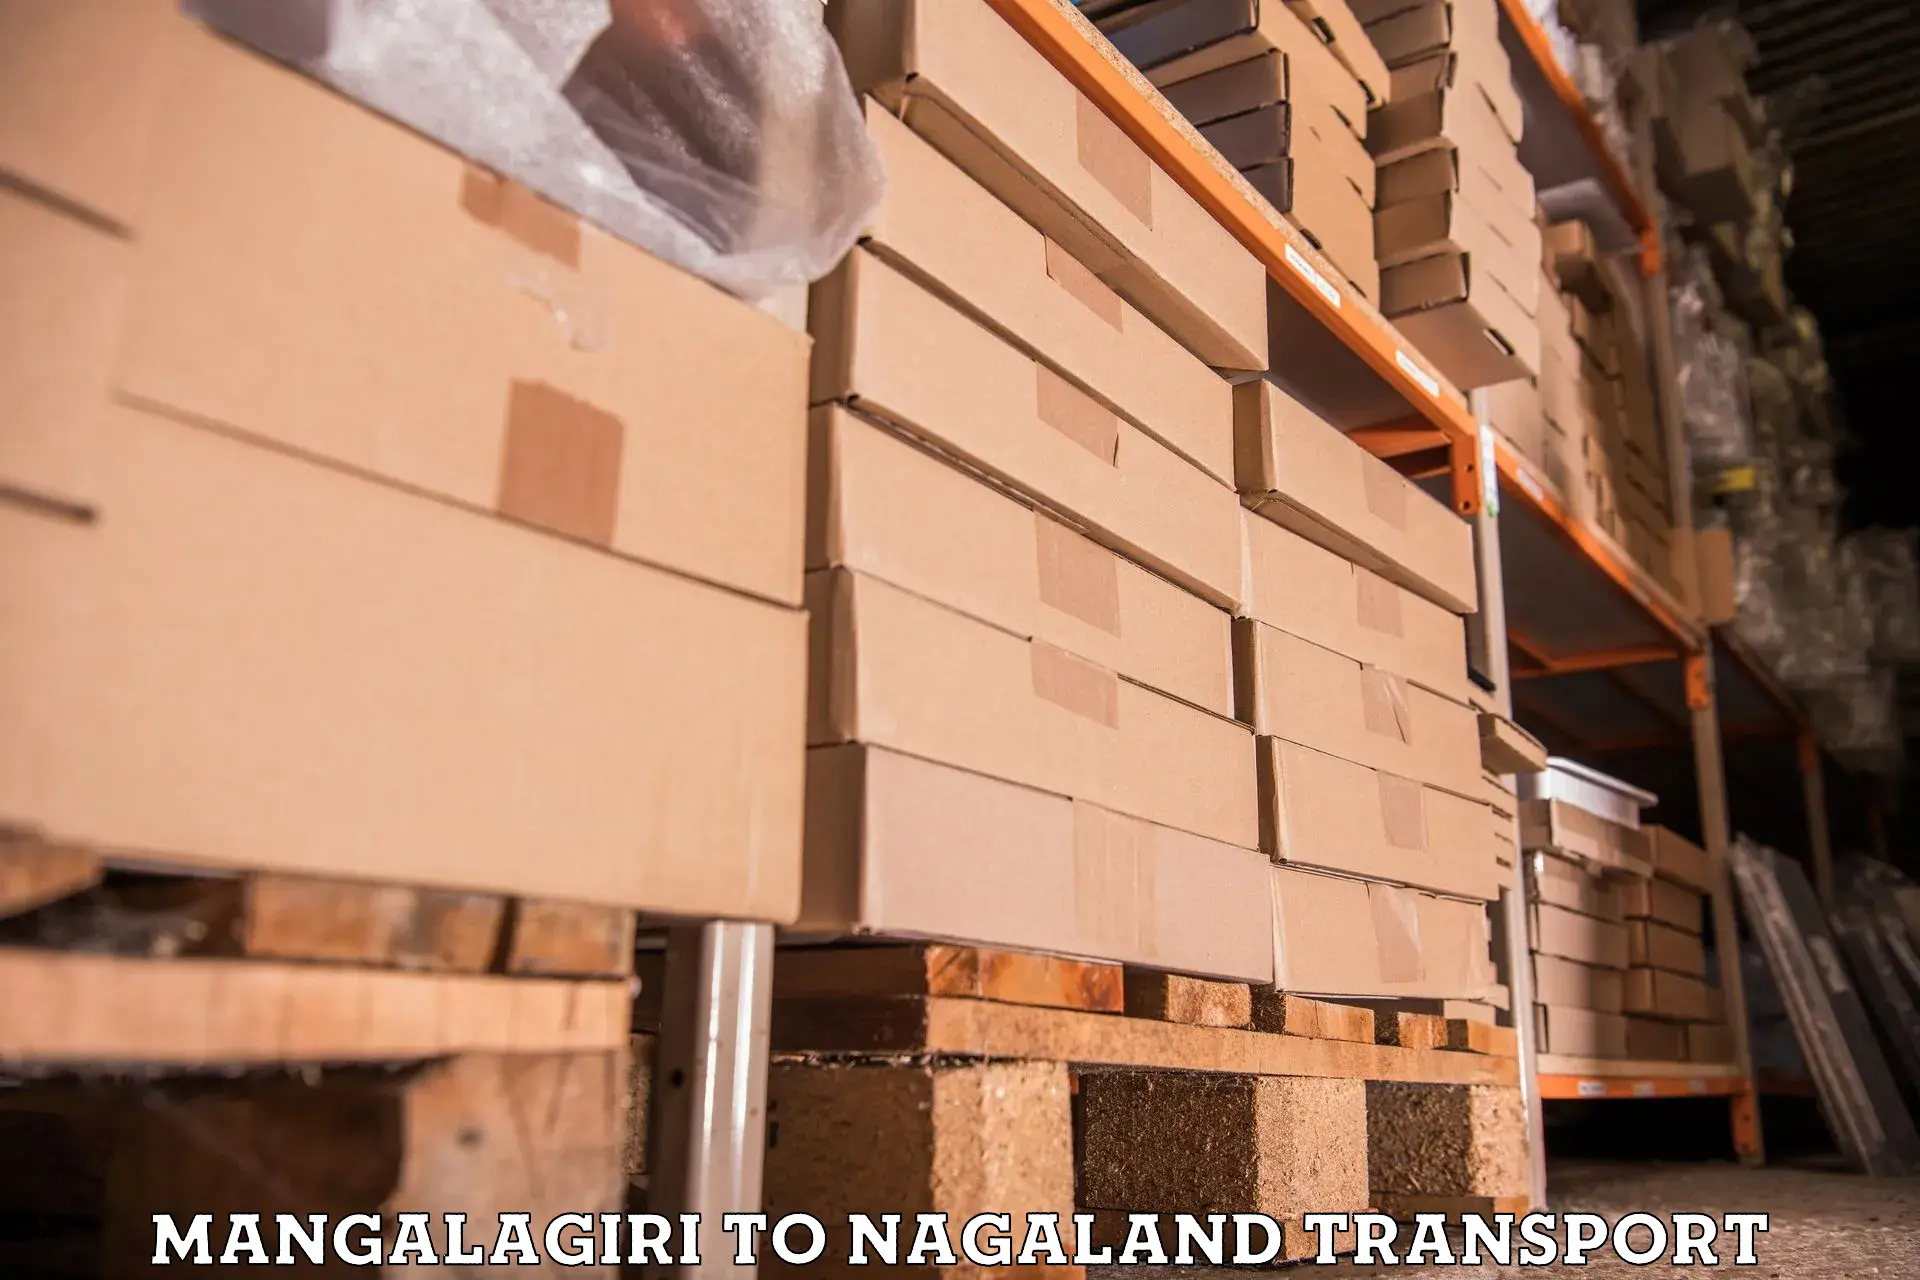 Furniture transport service Mangalagiri to Wokha